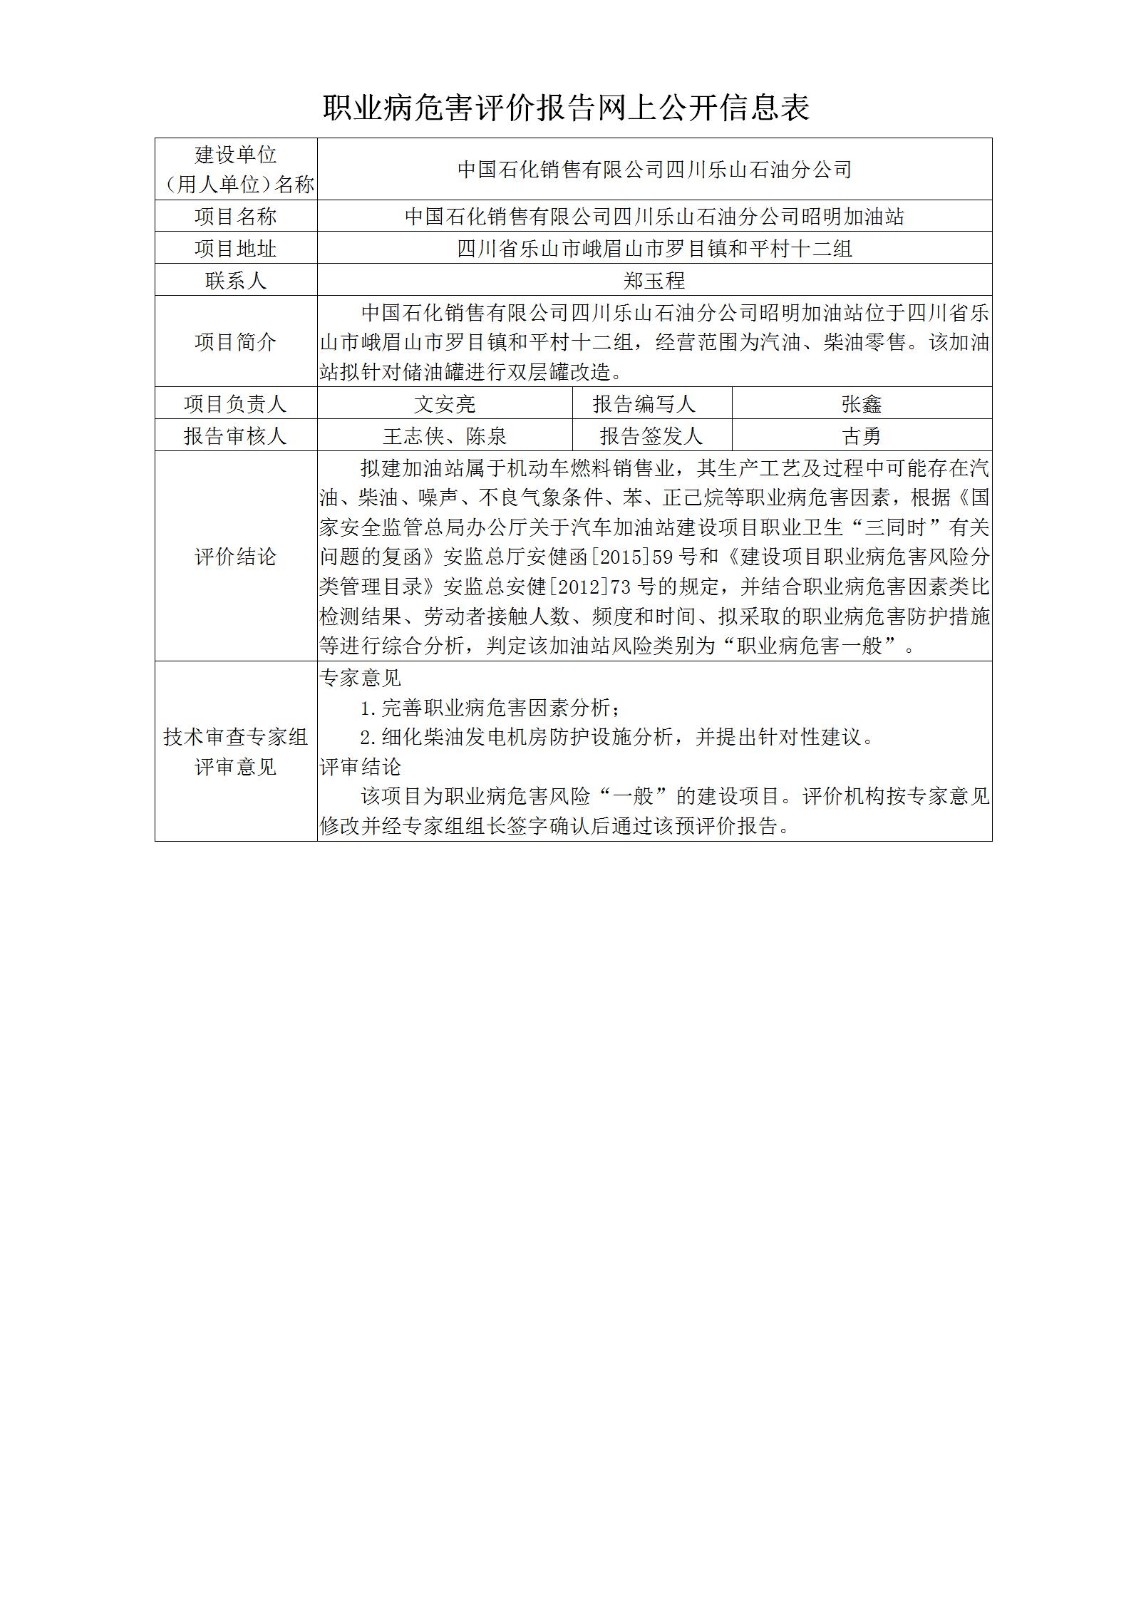 中国石化销售有限公司四川乐山石油分公司昭明加油站职业病危害预评价